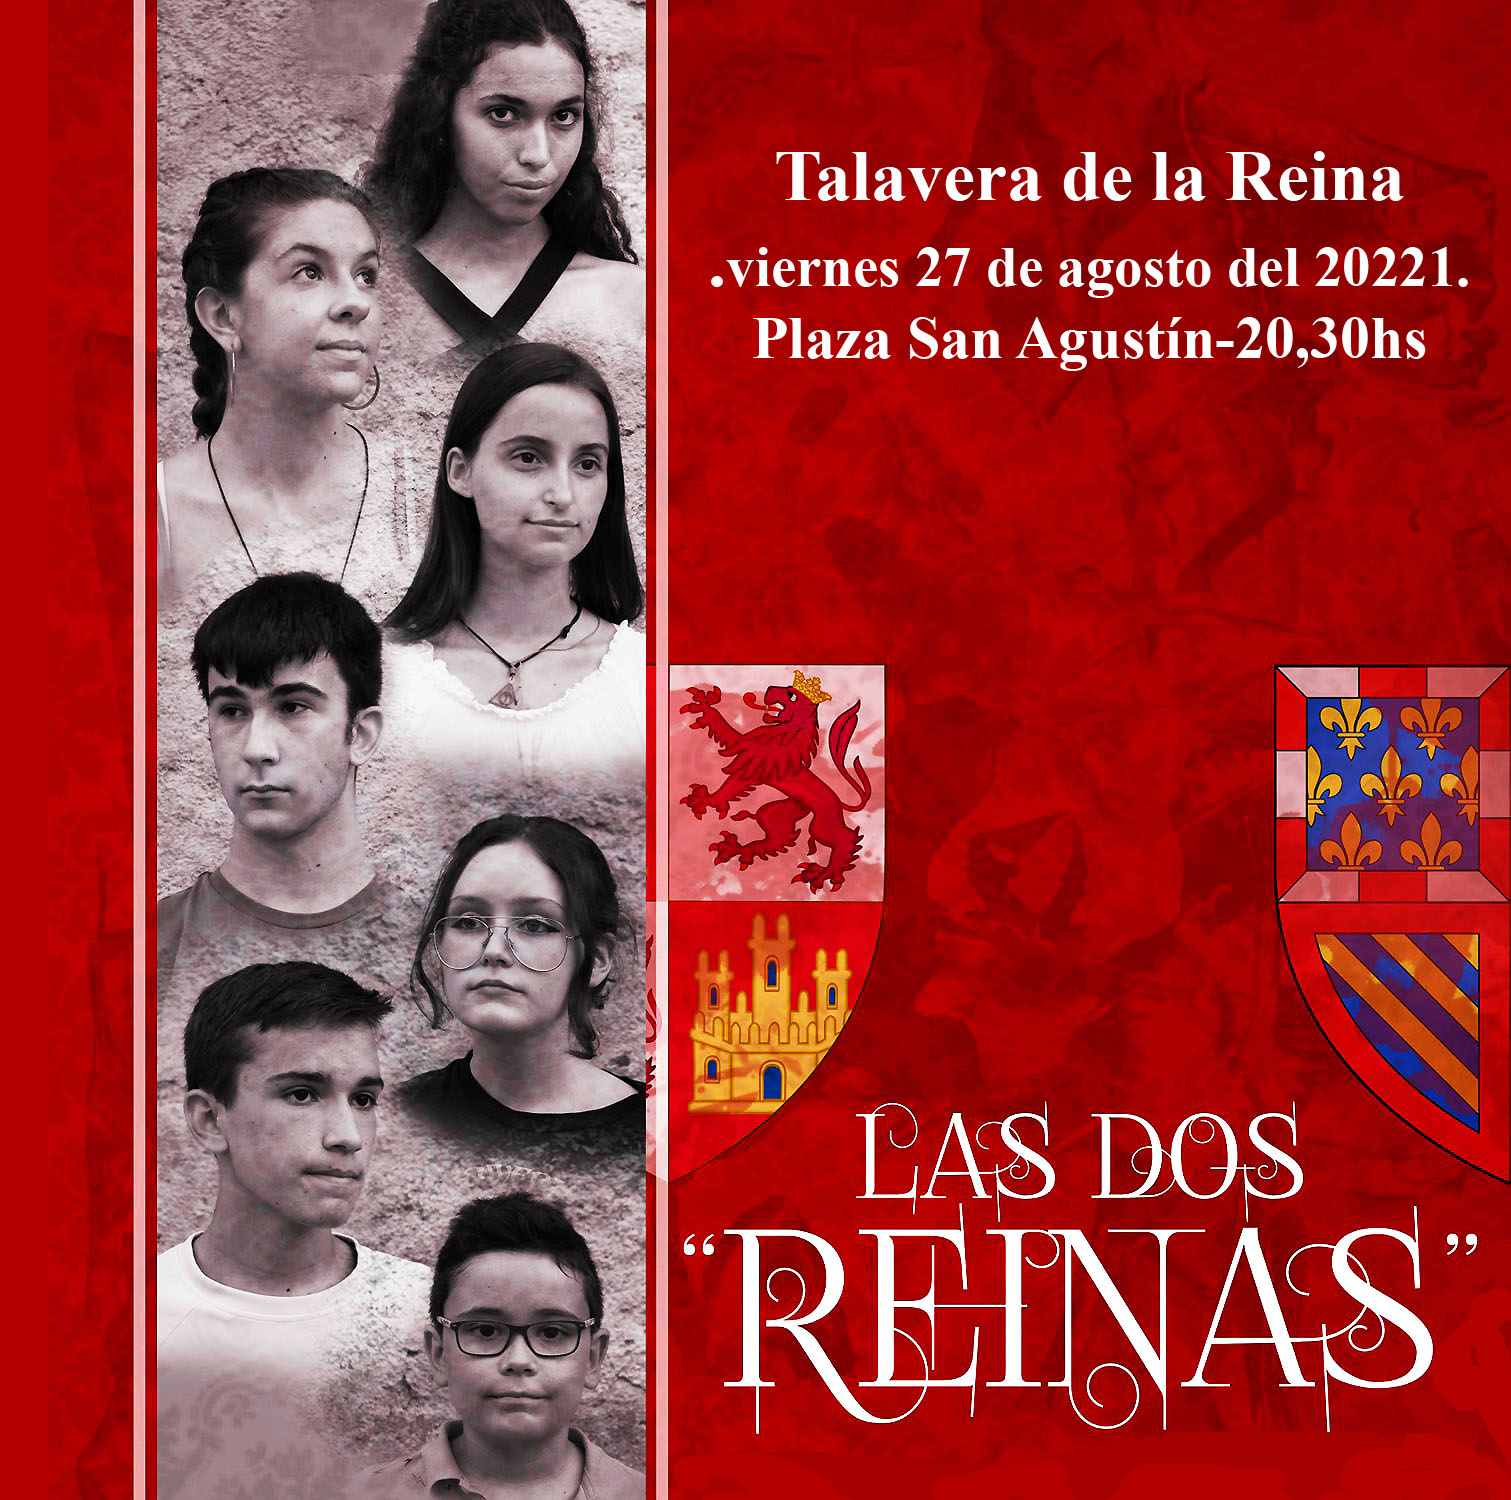 Vuelven las dos reinas a Talavera 